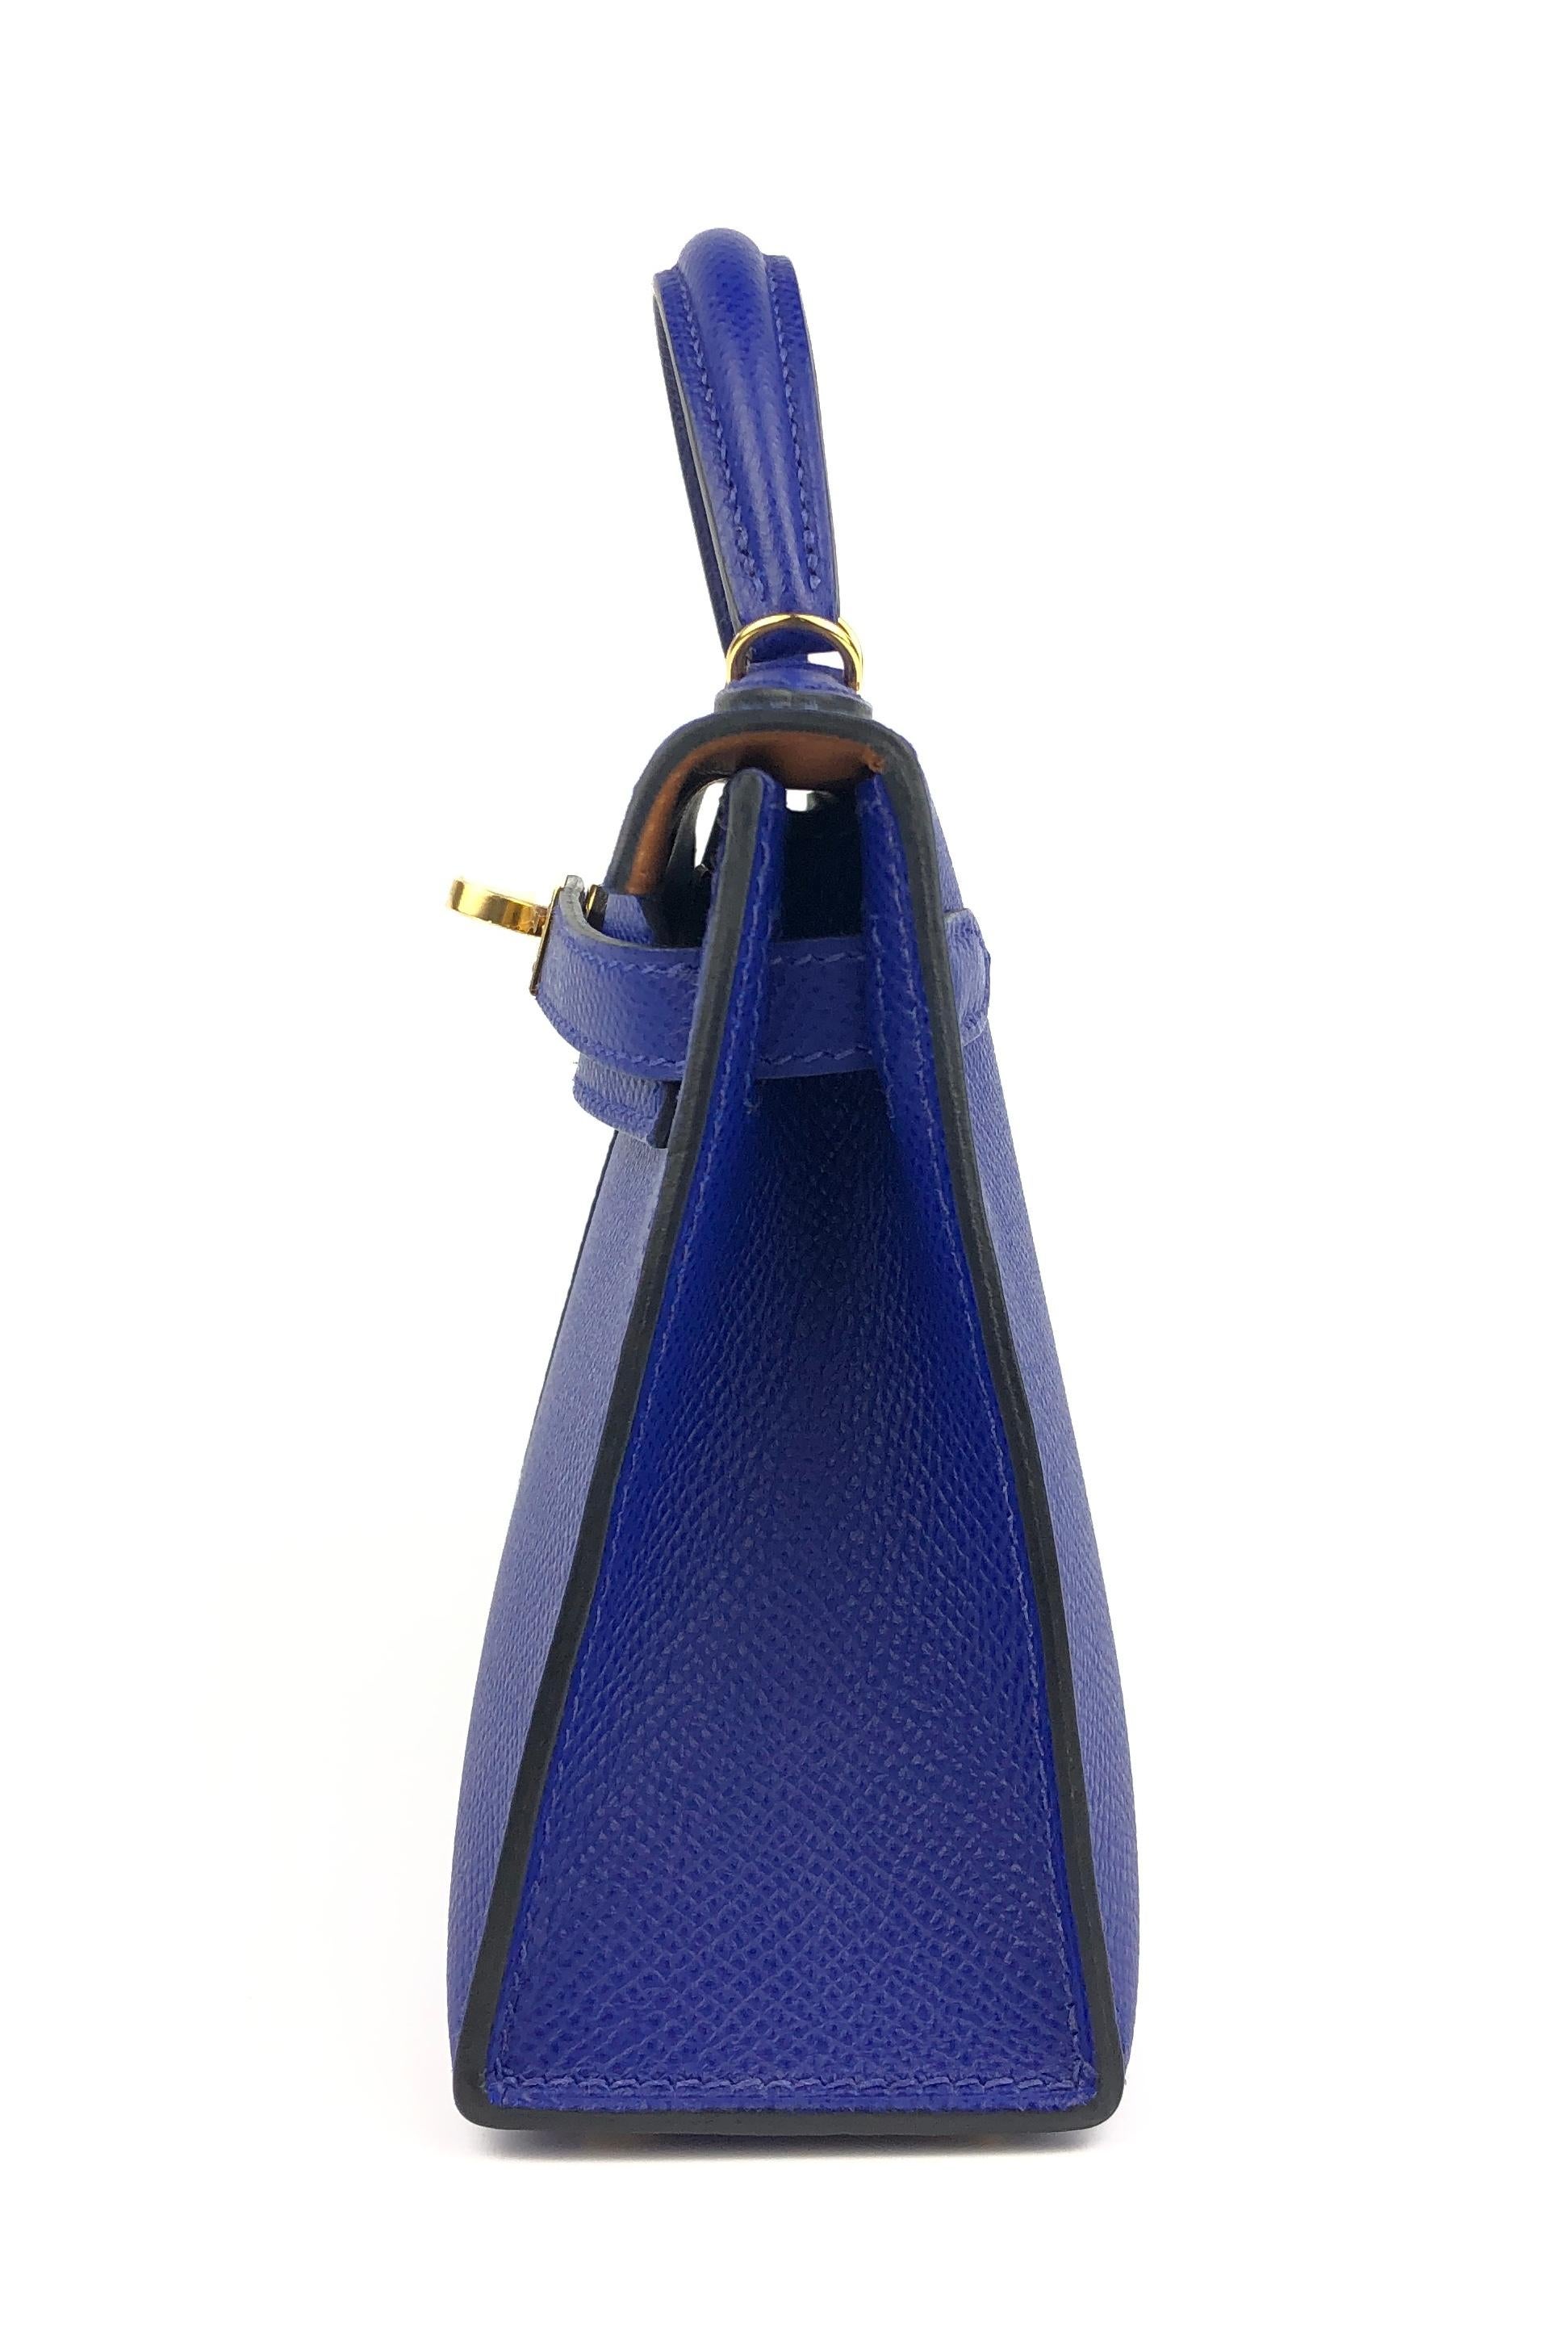 Sac Hermès Kelly Mini 20 tricolore bleu électrique encre or Epsom Nouveau  4